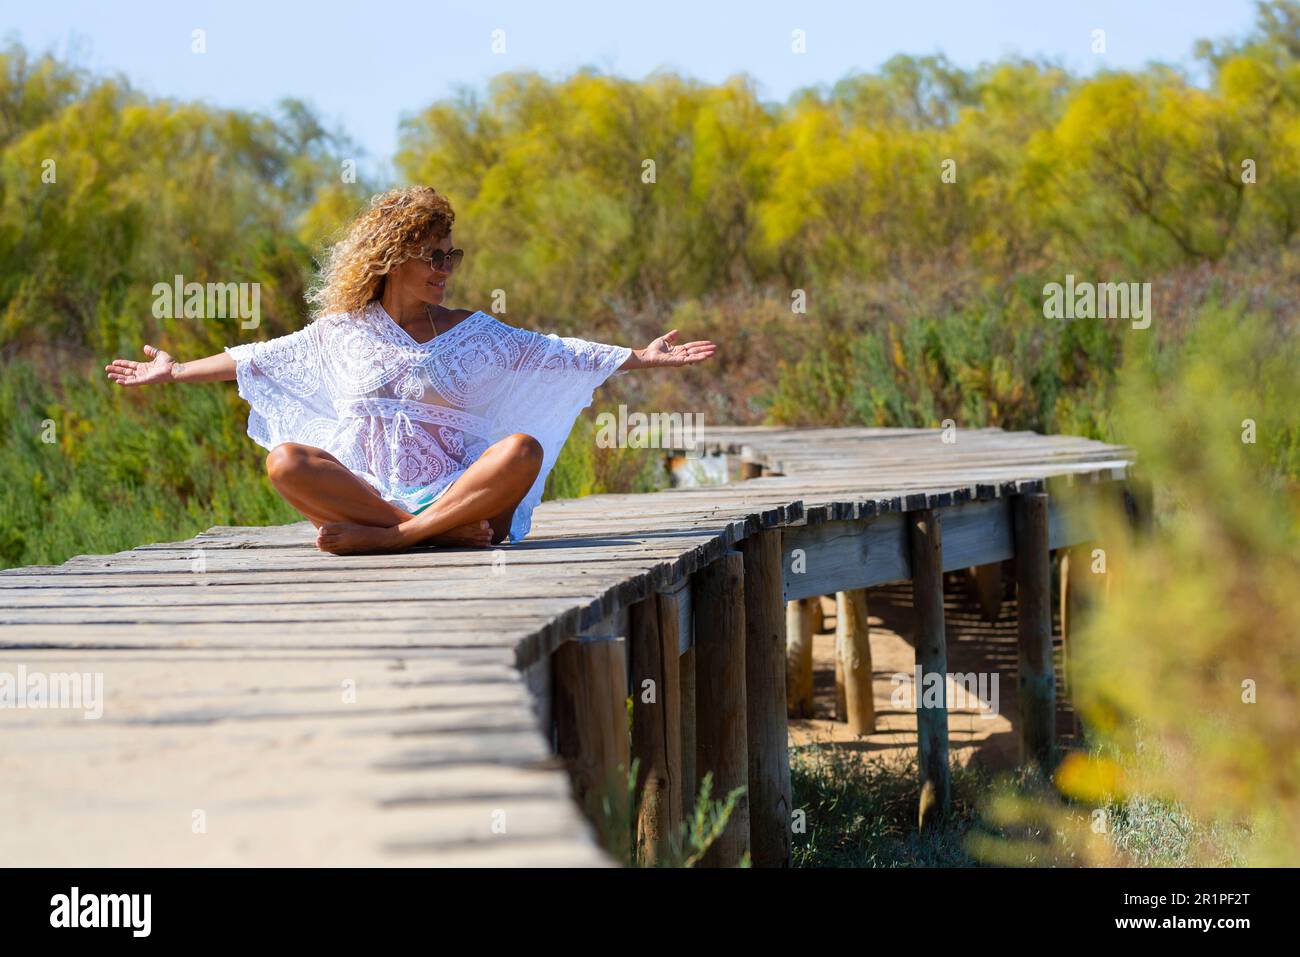 Felicità e libertà. Una donna felice e libera seduta da sola su un molo di legno al parco che apre le braccia e godendosi la sensazione. Zenlike e persone stile di vita sano. Ragazza daydreamer fuori divertirsi Foto Stock